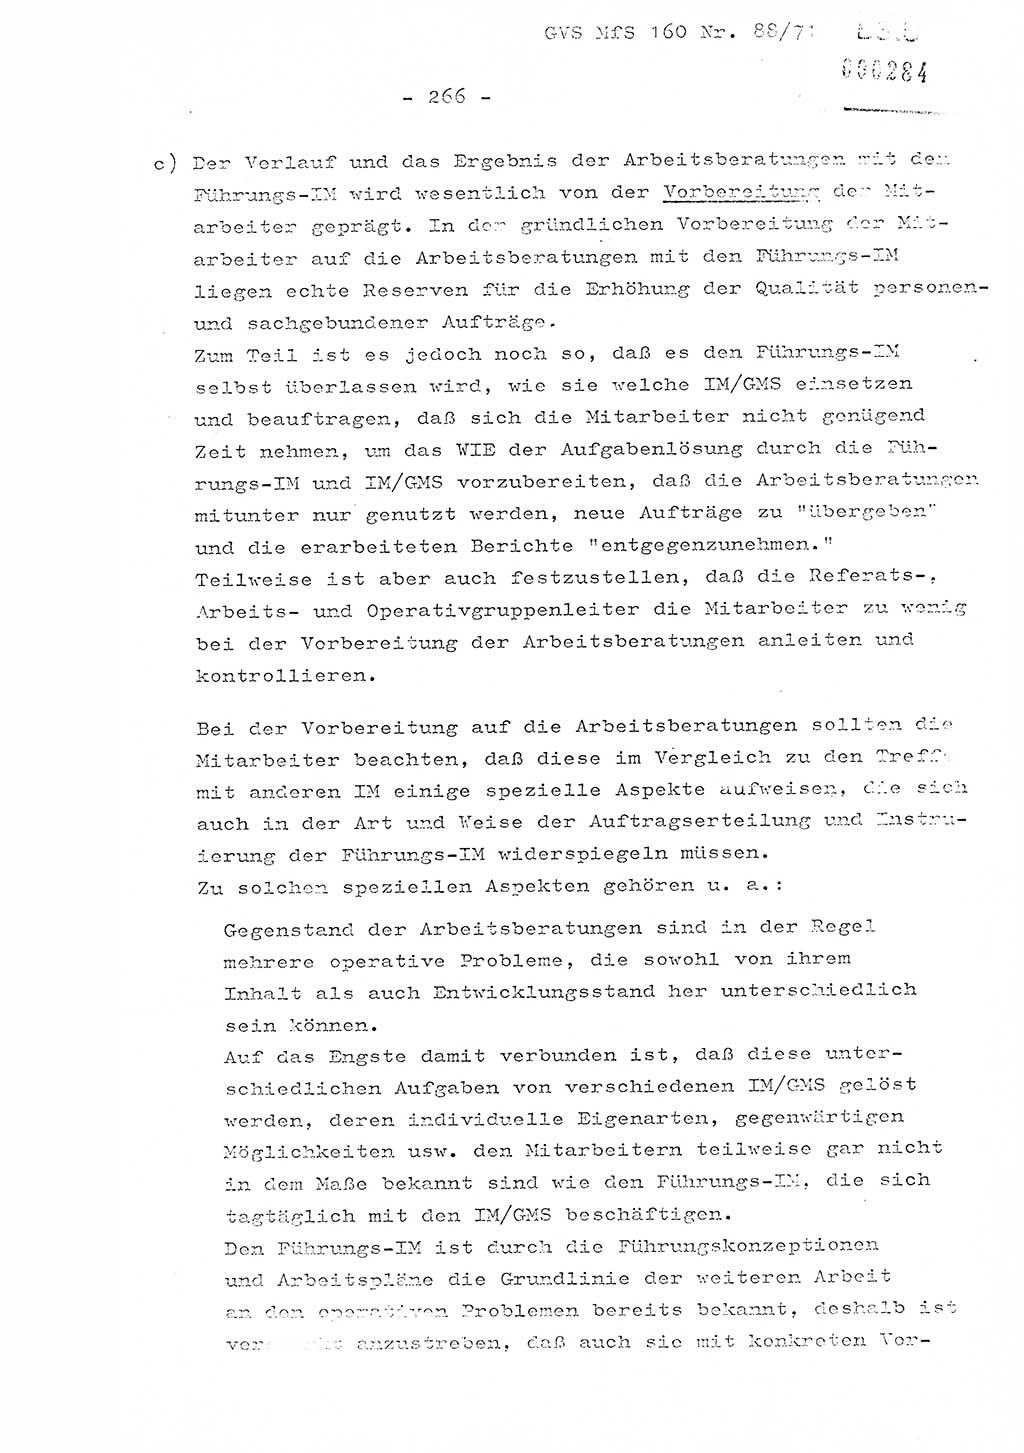 Dissertation Oberstleutnant Josef Schwarz (BV Schwerin), Major Fritz Amm (JHS), Hauptmann Peter Gräßler (JHS), Ministerium für Staatssicherheit (MfS) [Deutsche Demokratische Republik (DDR)], Juristische Hochschule (JHS), Geheime Verschlußsache (GVS) 160-88/71, Potsdam 1972, Seite 266 (Diss. MfS DDR JHS GVS 160-88/71 1972, S. 266)